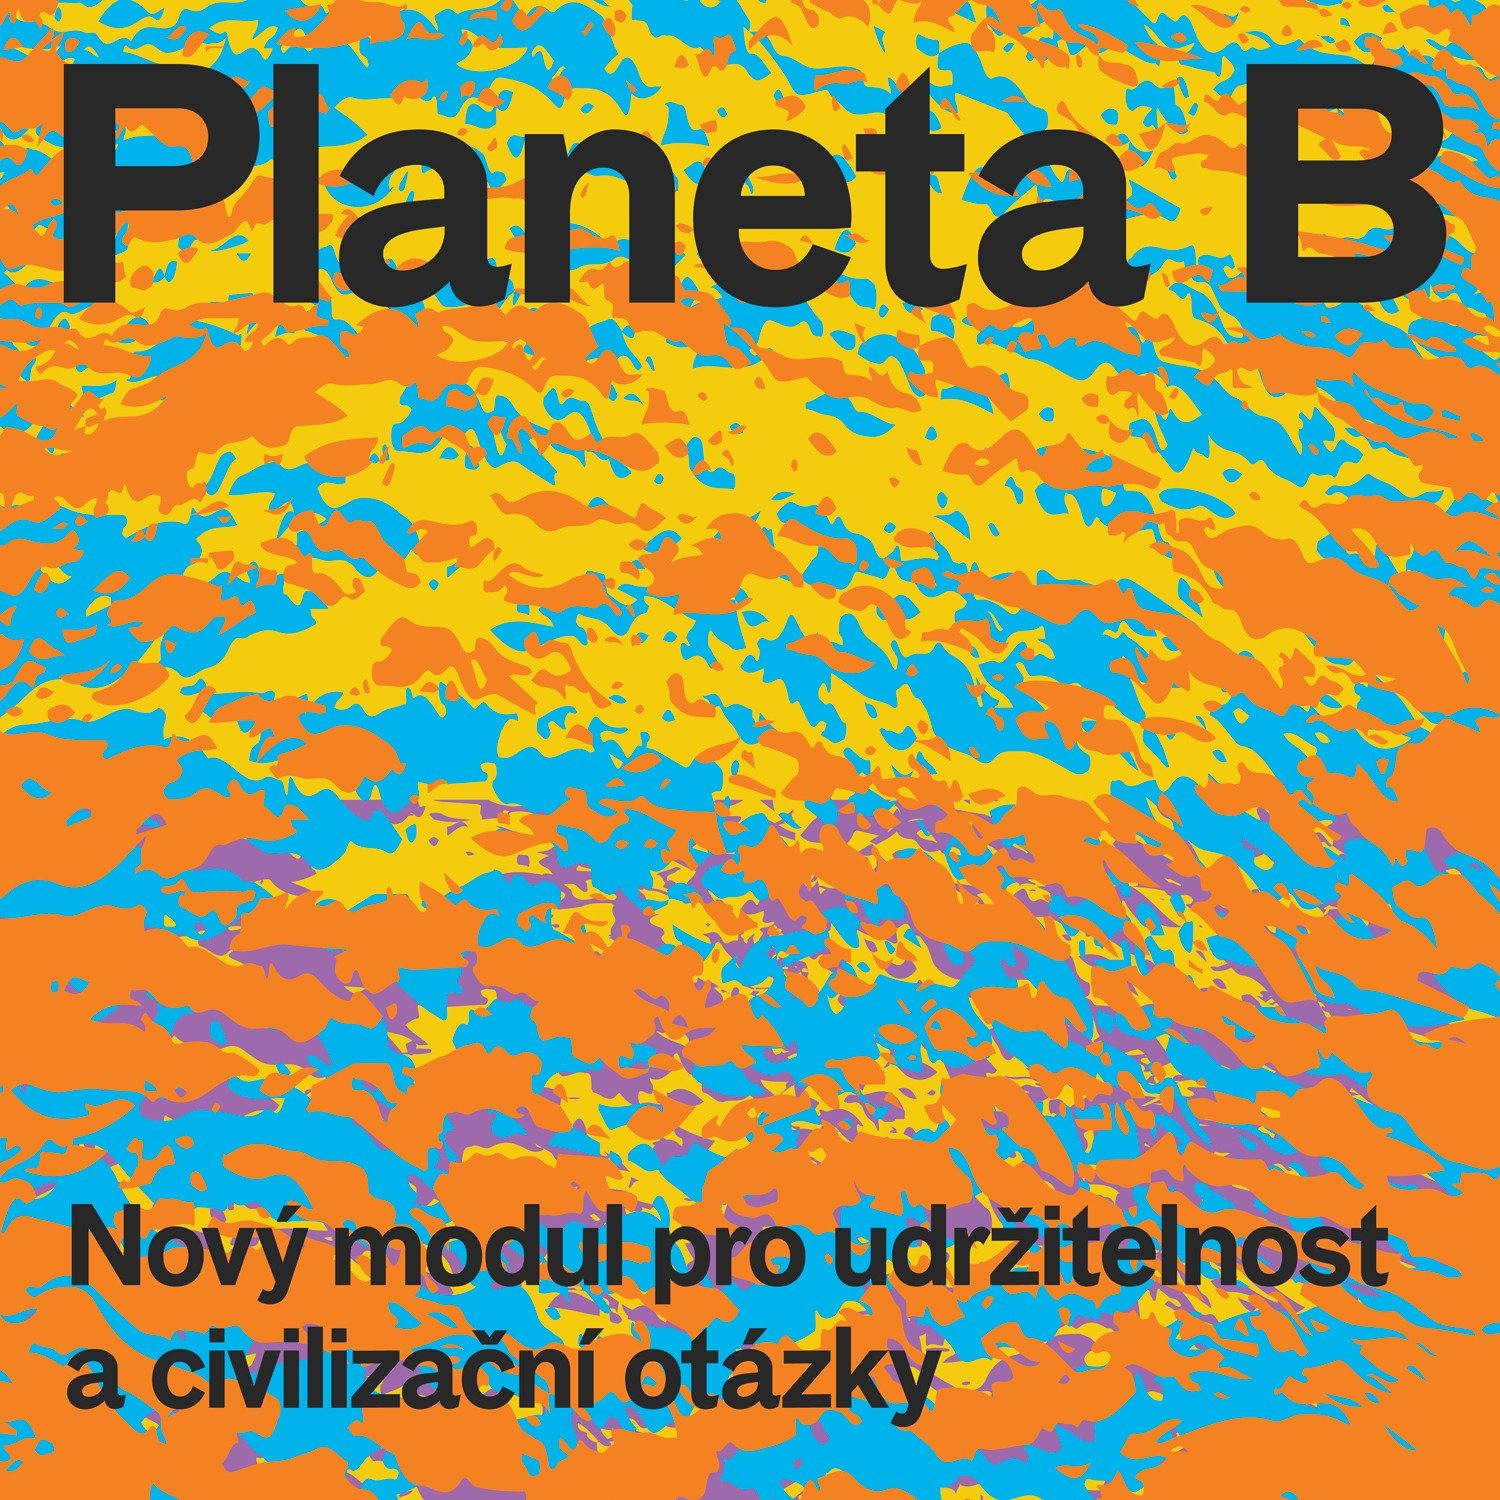 Planeta B - Nový modul pro udržitelnost a civilizační otázky